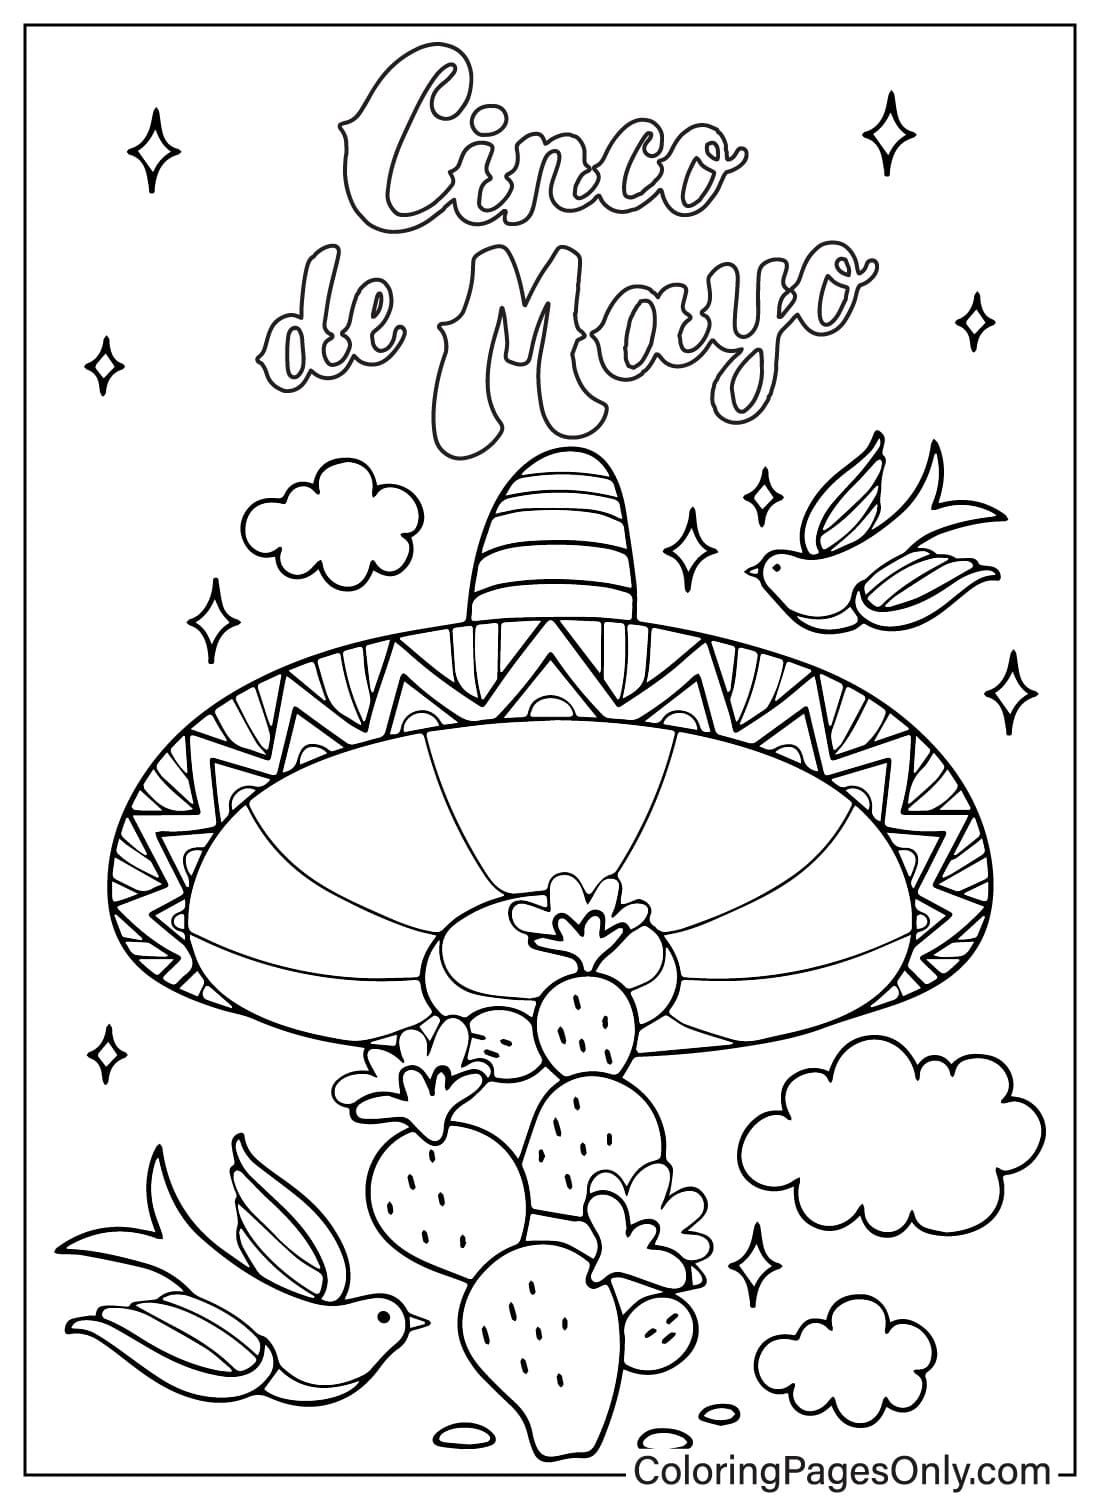 Dessin animé de chapeau mexicain Cinco De Mayo de Cinco De Mayo